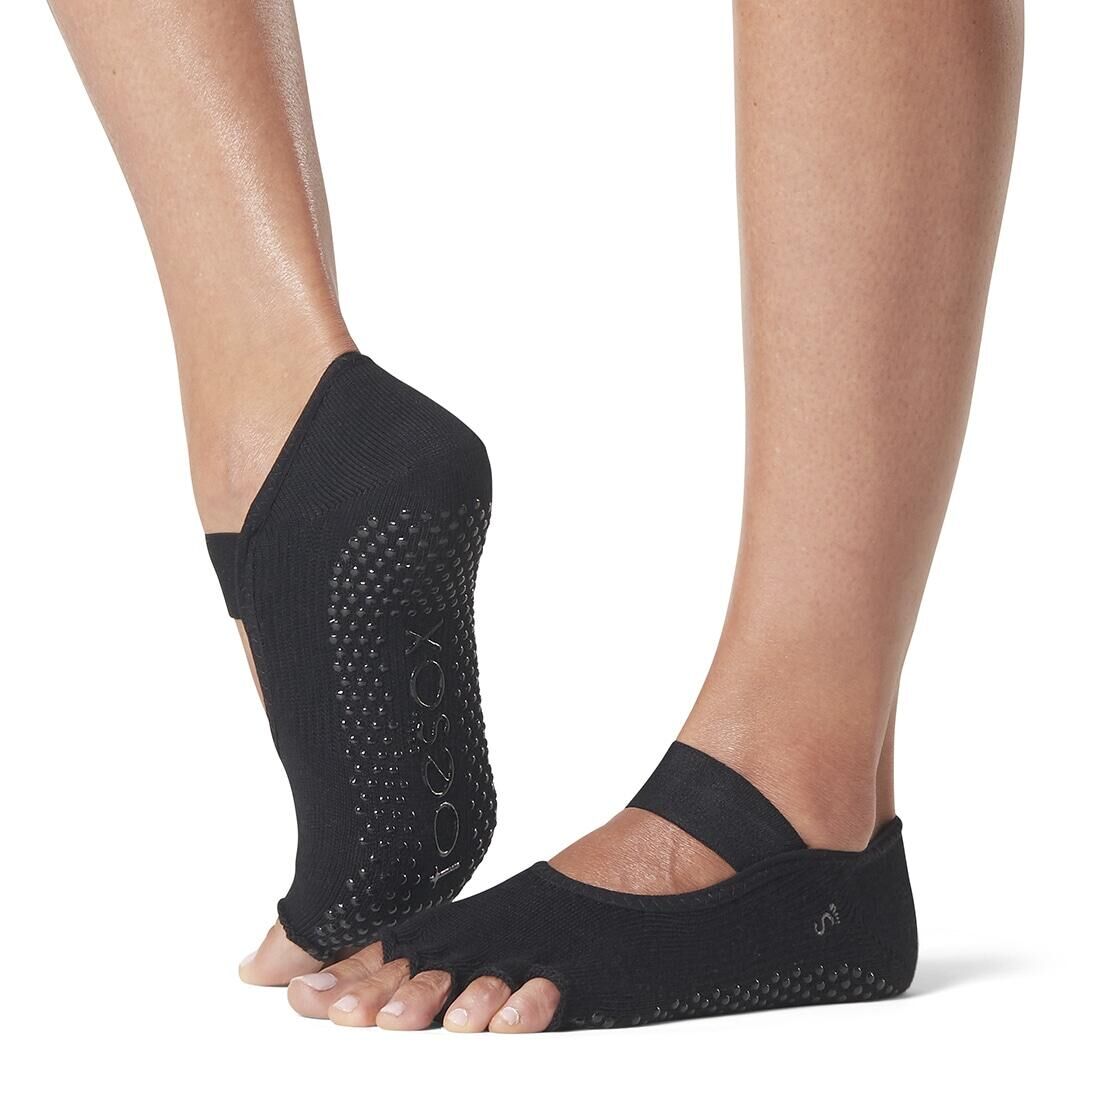 Non-Slip Yoga Toe Socks - Black